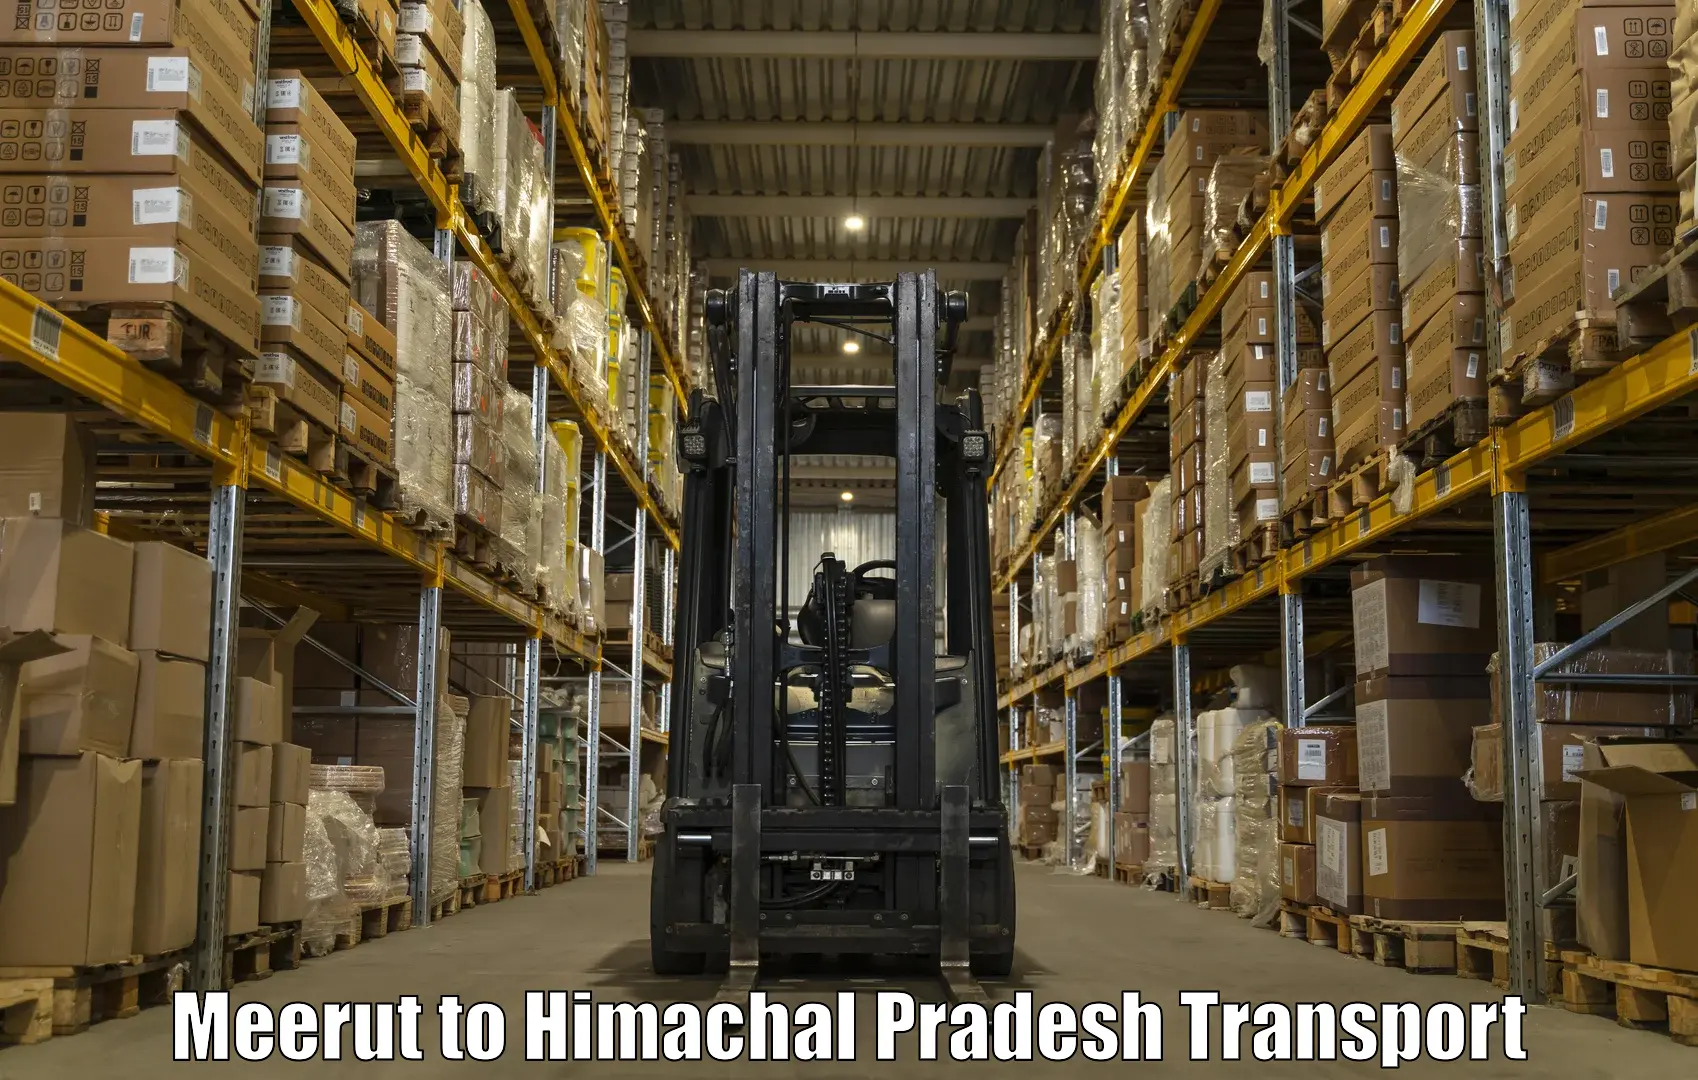 Air freight transport services Meerut to Rakkar